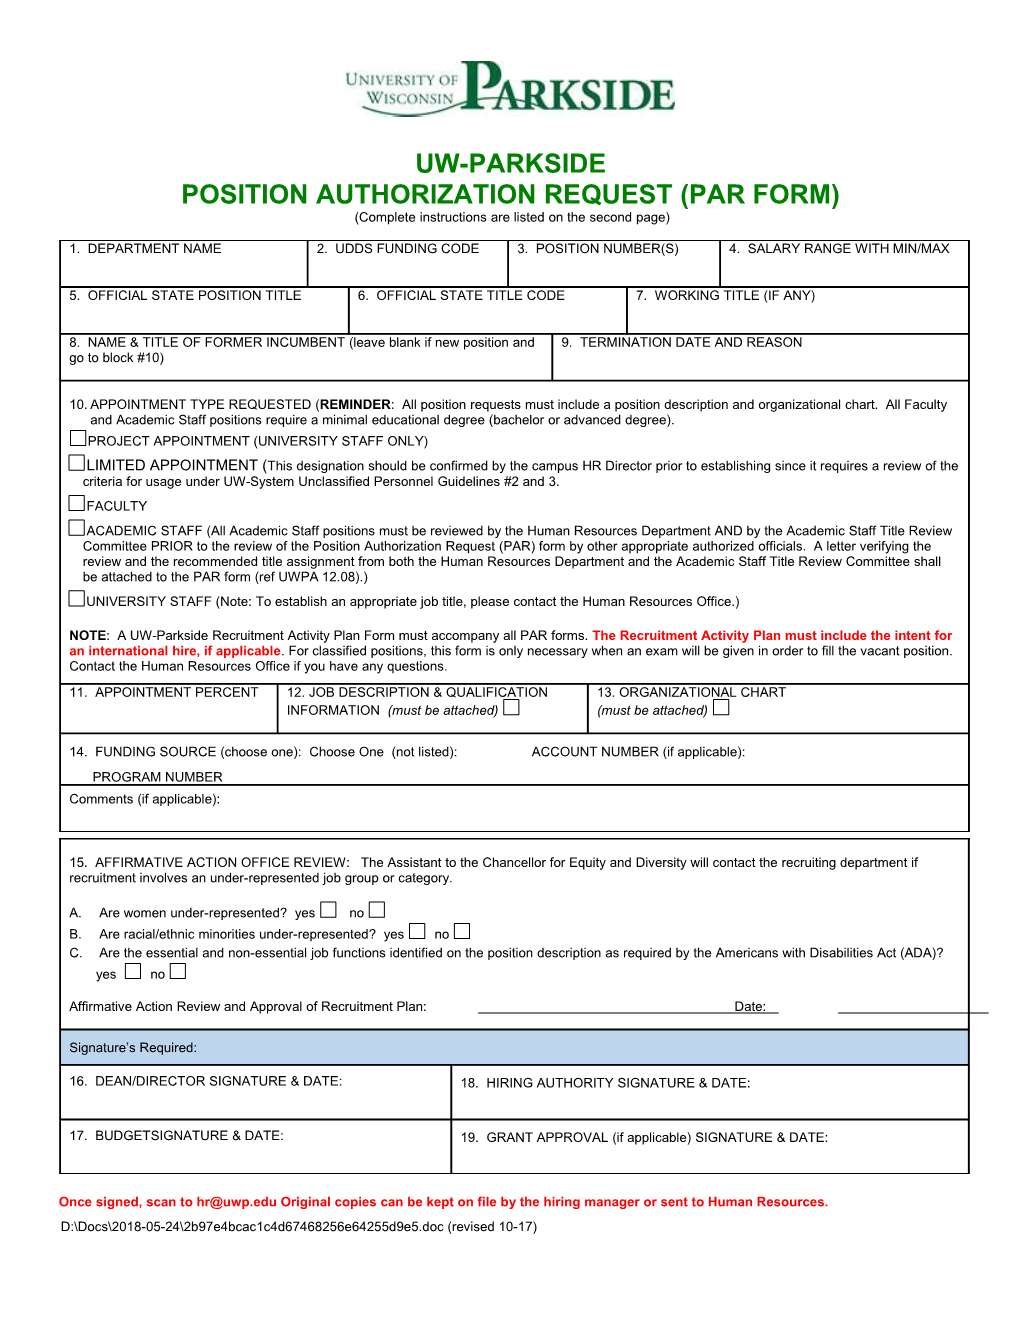 Position Authorization Request (Par Form)